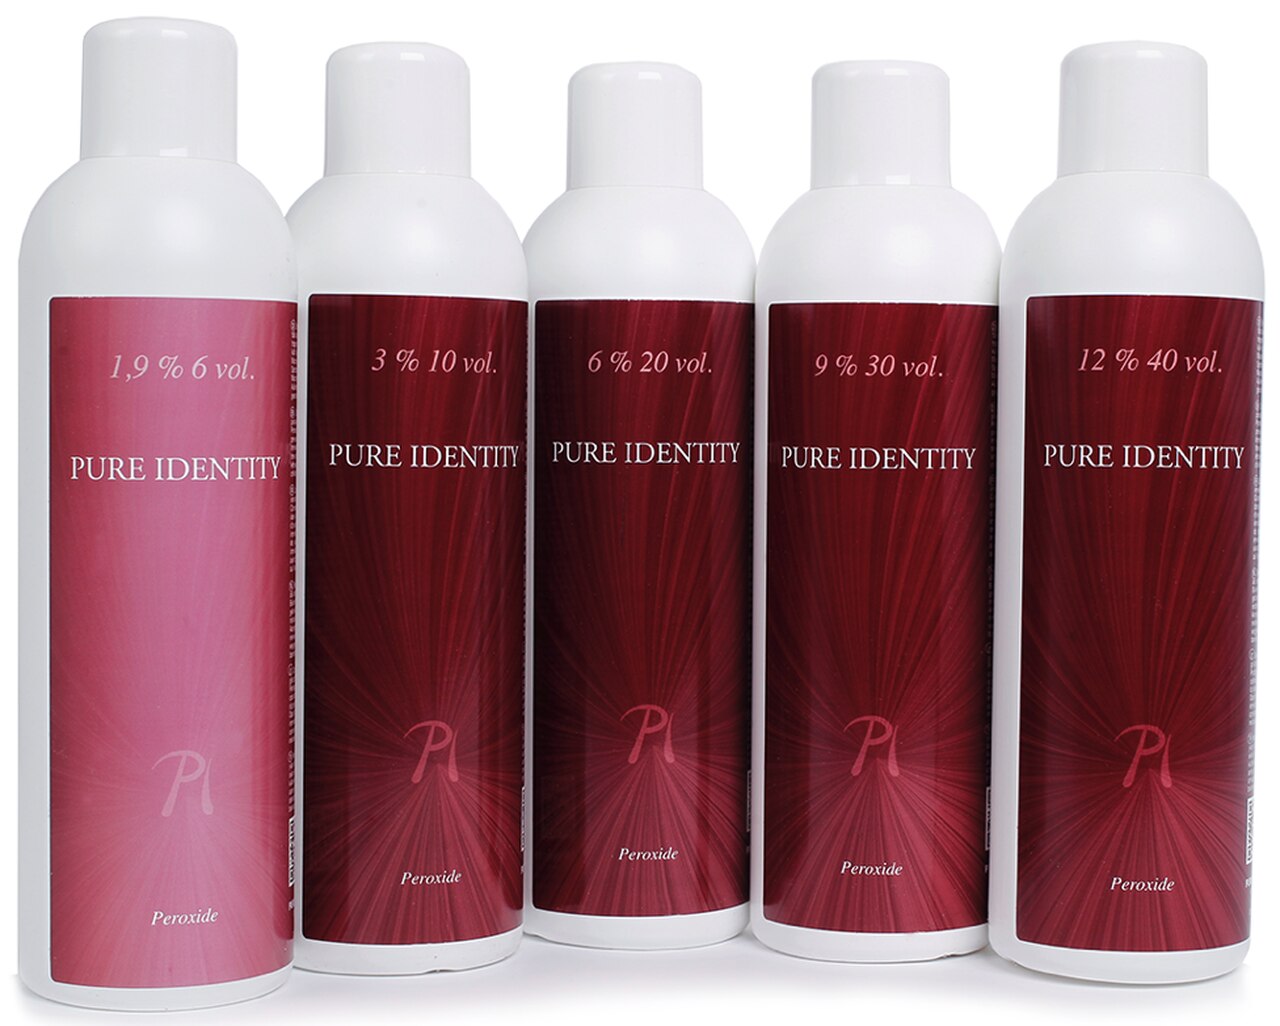 Pure Identity Creme Peroxide 12% 40 vol 950ml